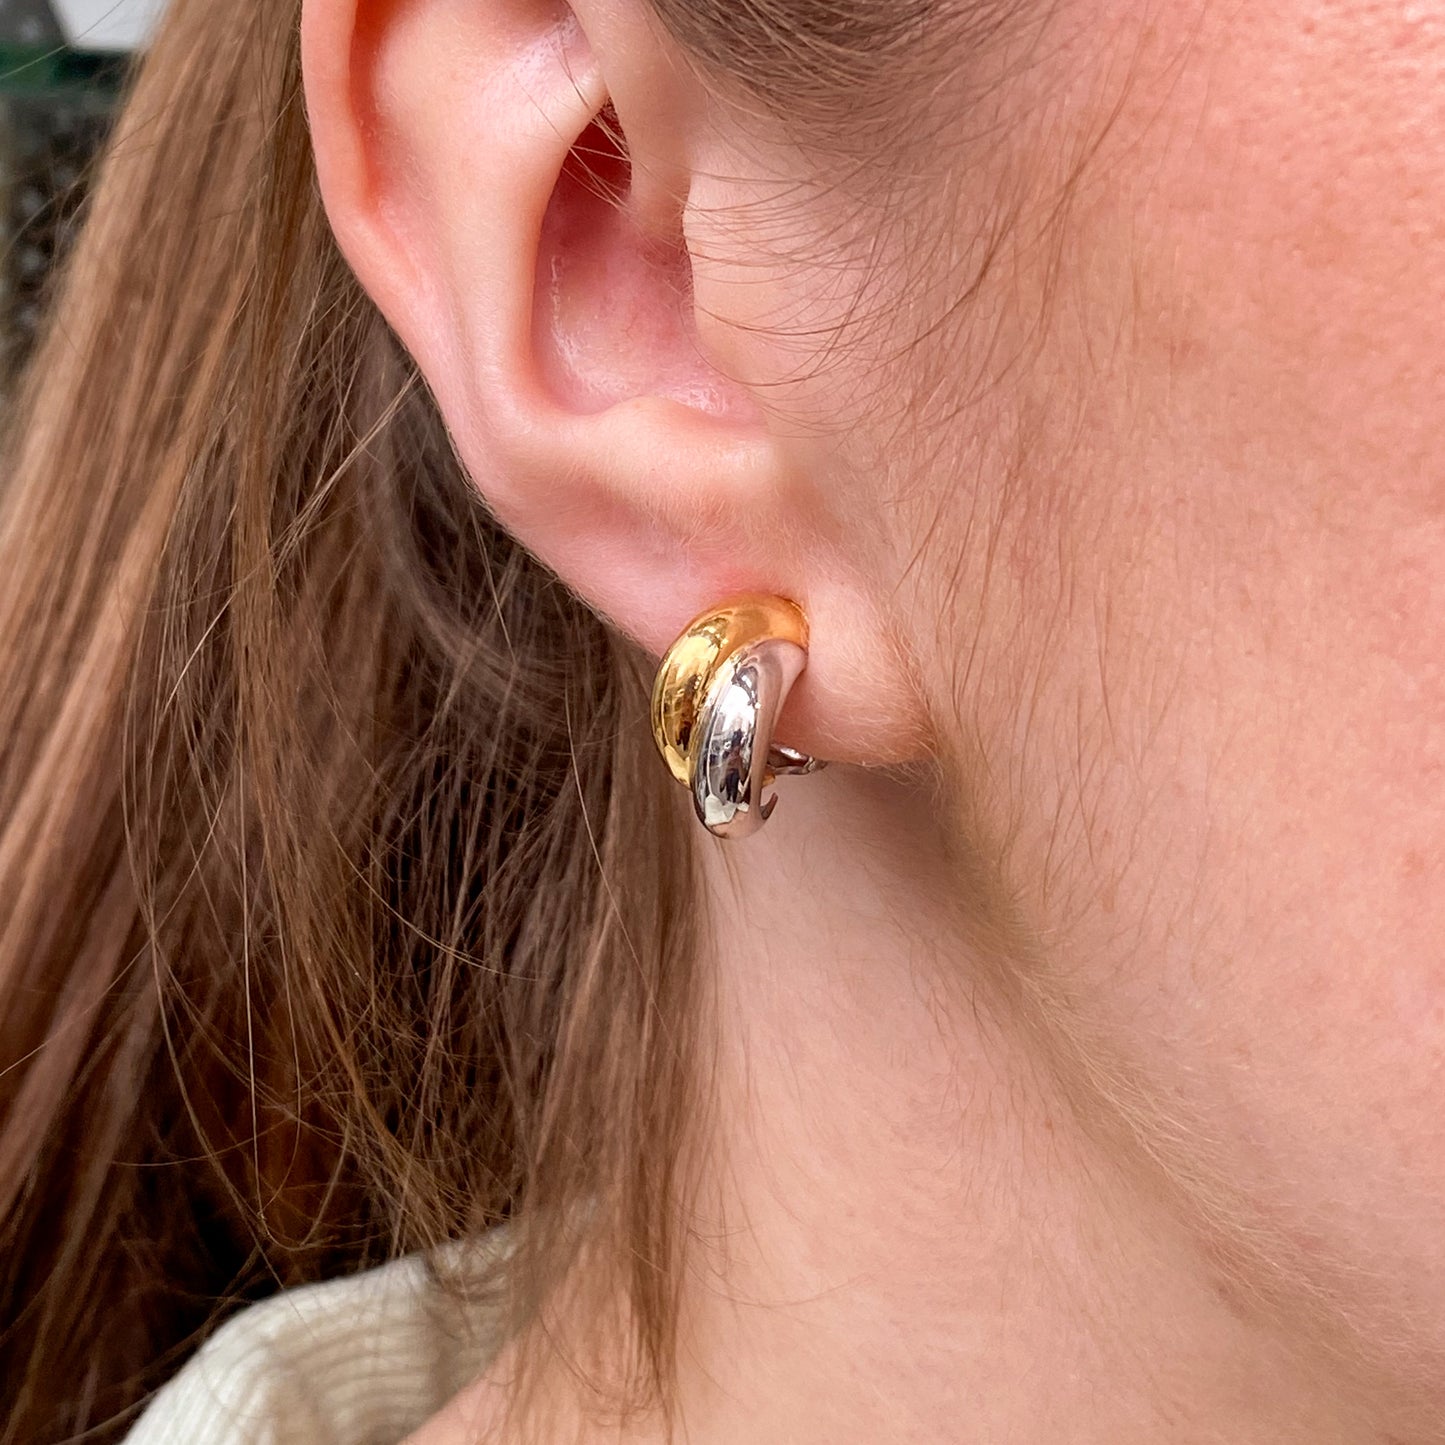 Clip on Earrings - Gold & Silver - John Ross Jewellers